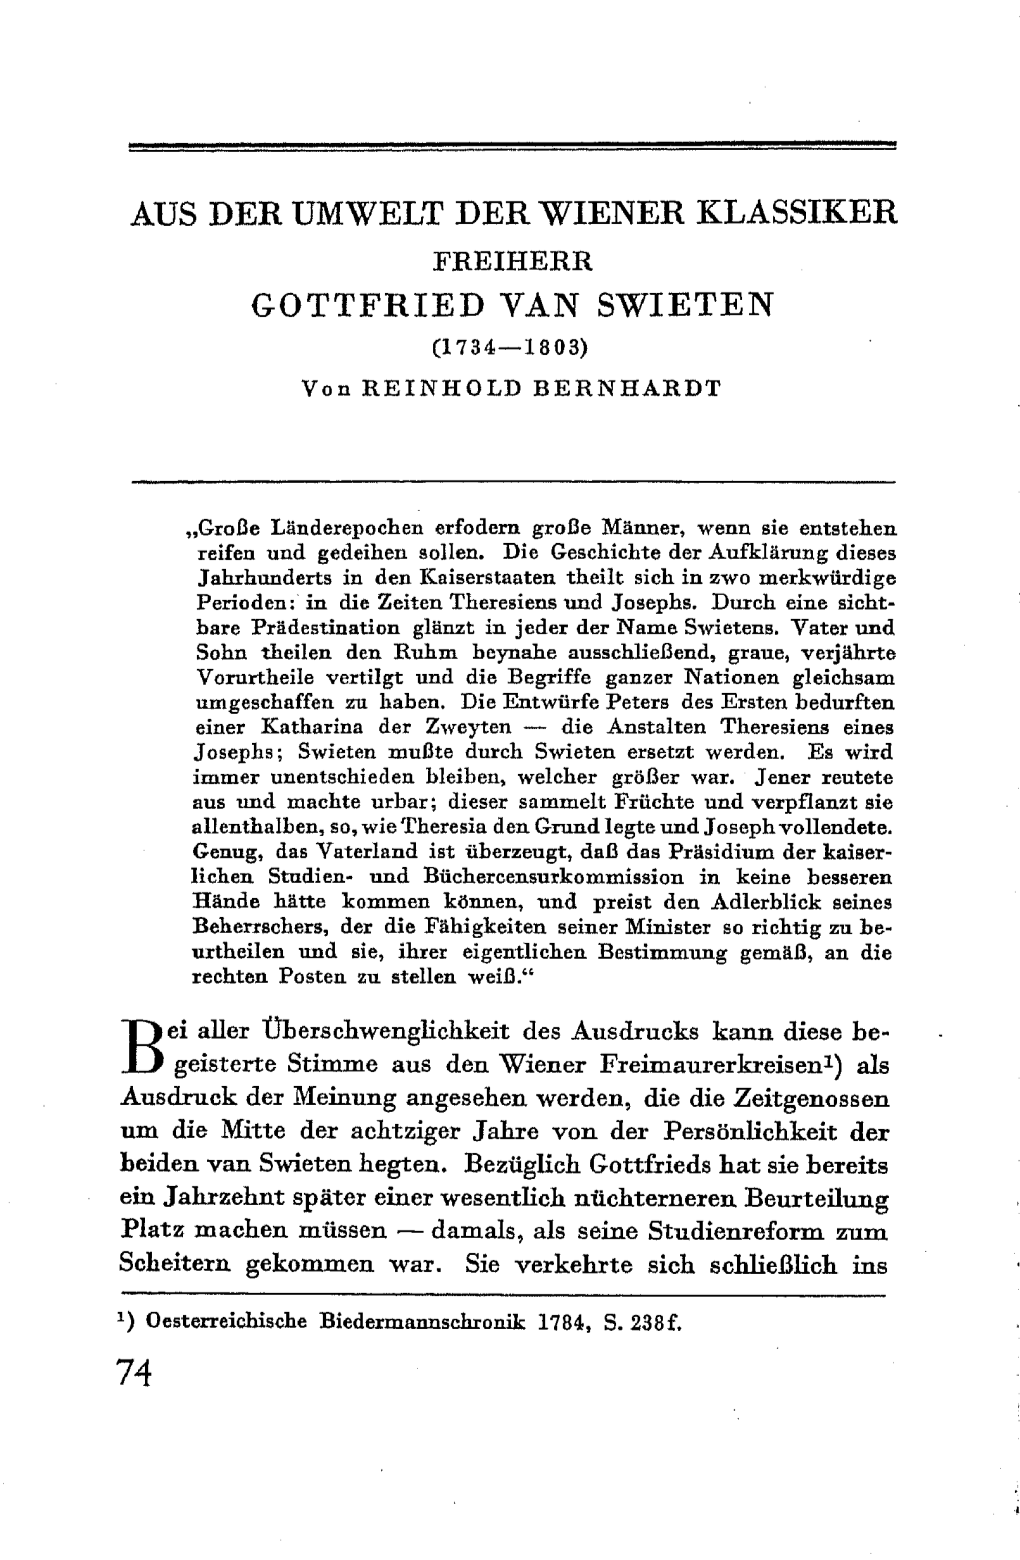 FREIHERR GOTTFRIED VAN SWIETEN (1734-1803) Von REINHOLD BERNHARDT